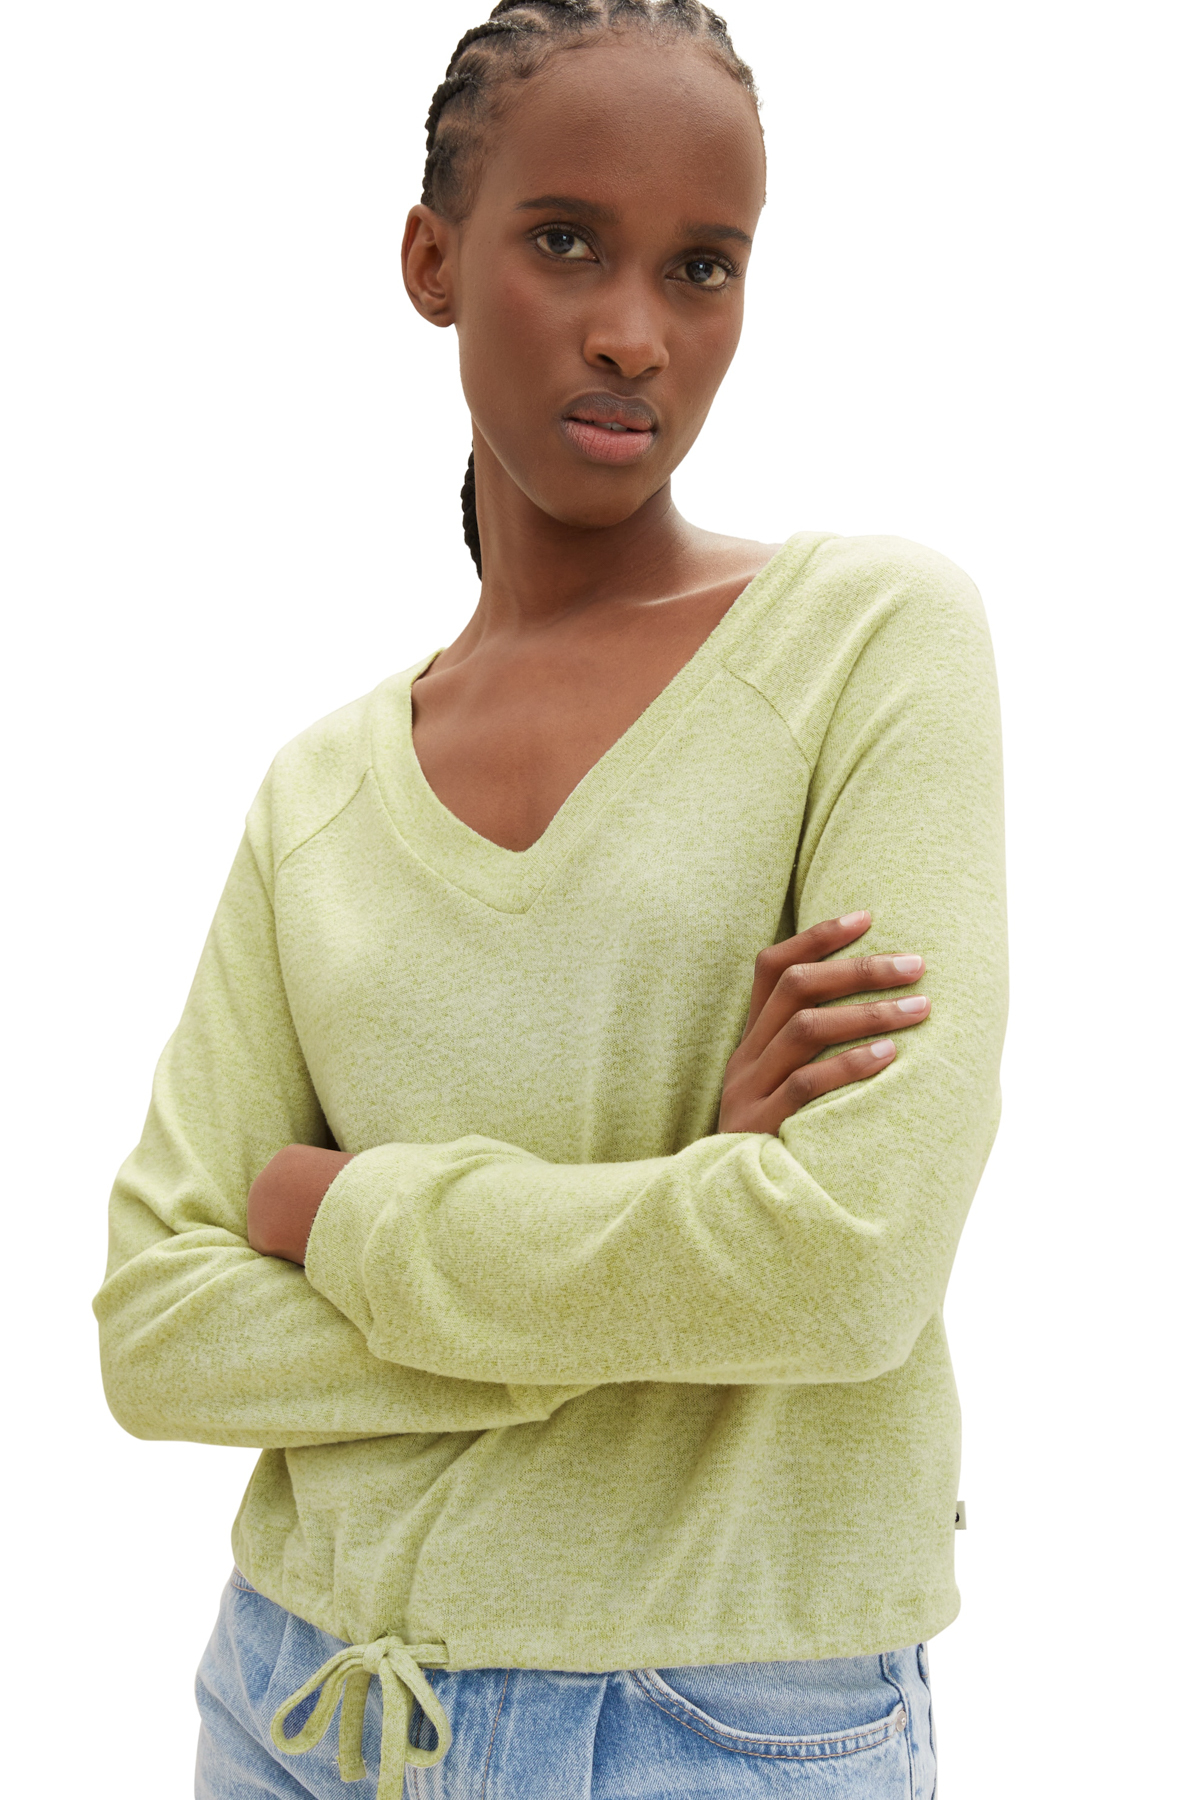 Футболка Женская/Девочка уютная футболка реглан Tom Tailor Denim, зеленый платье tom tailor размер xl зеленый